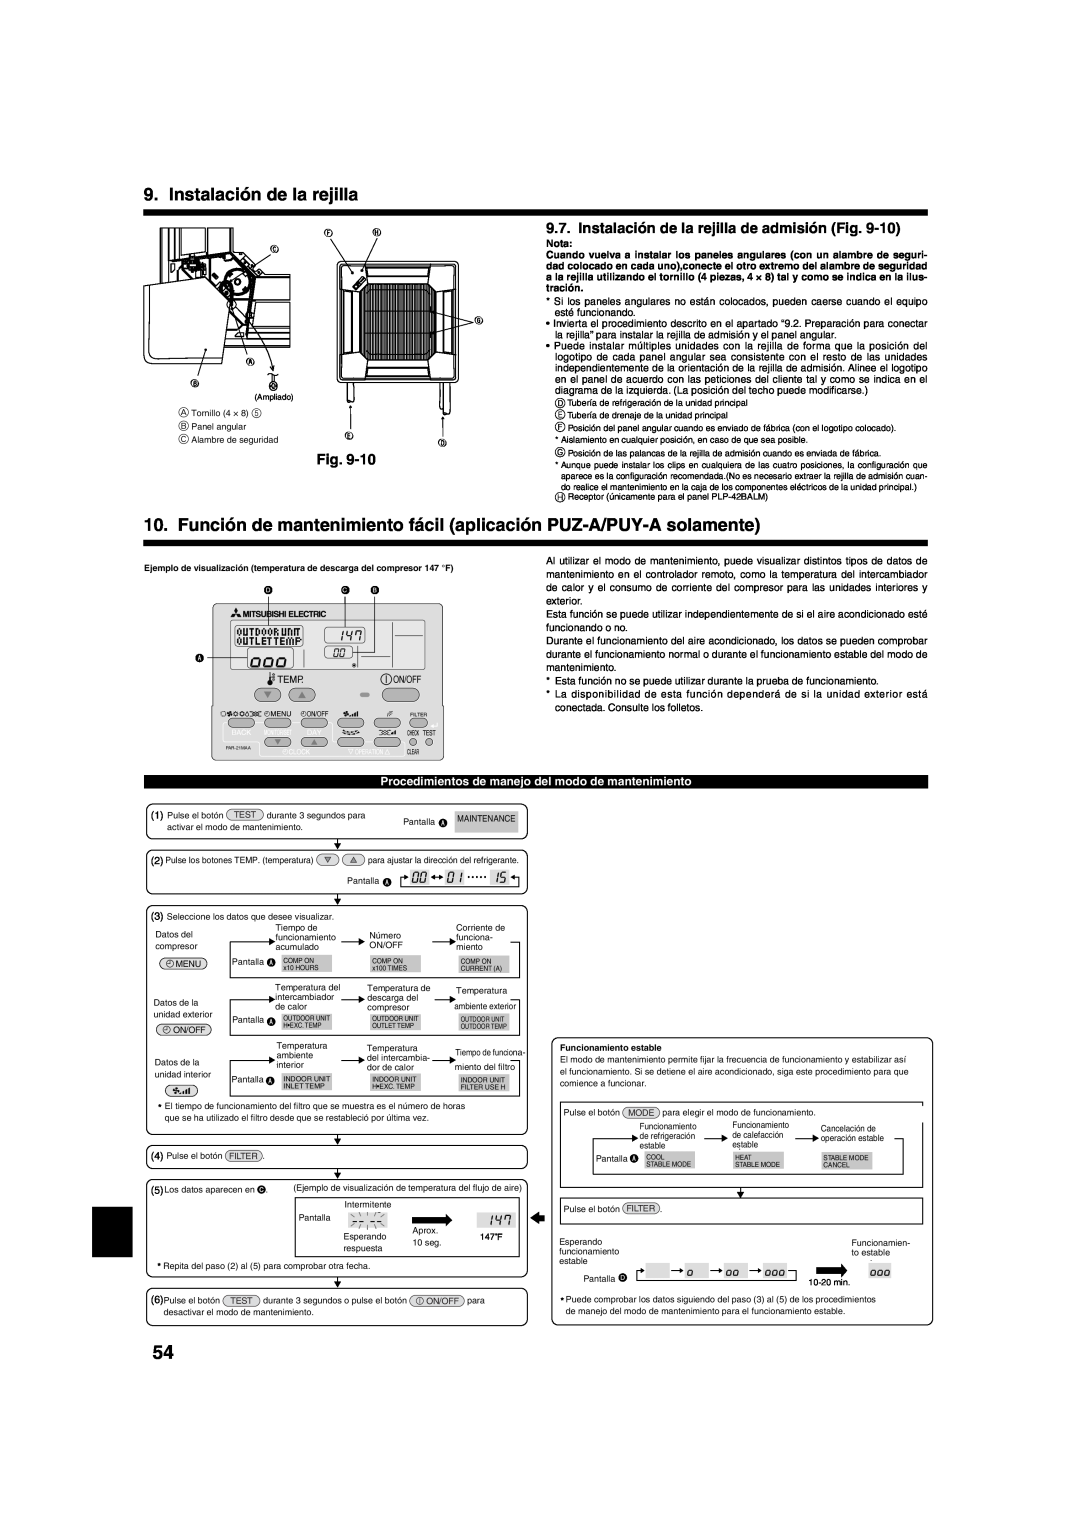 Mitsumi electronic PLA-ABA installation manual Instalación de la rejilla de admisión Fig 